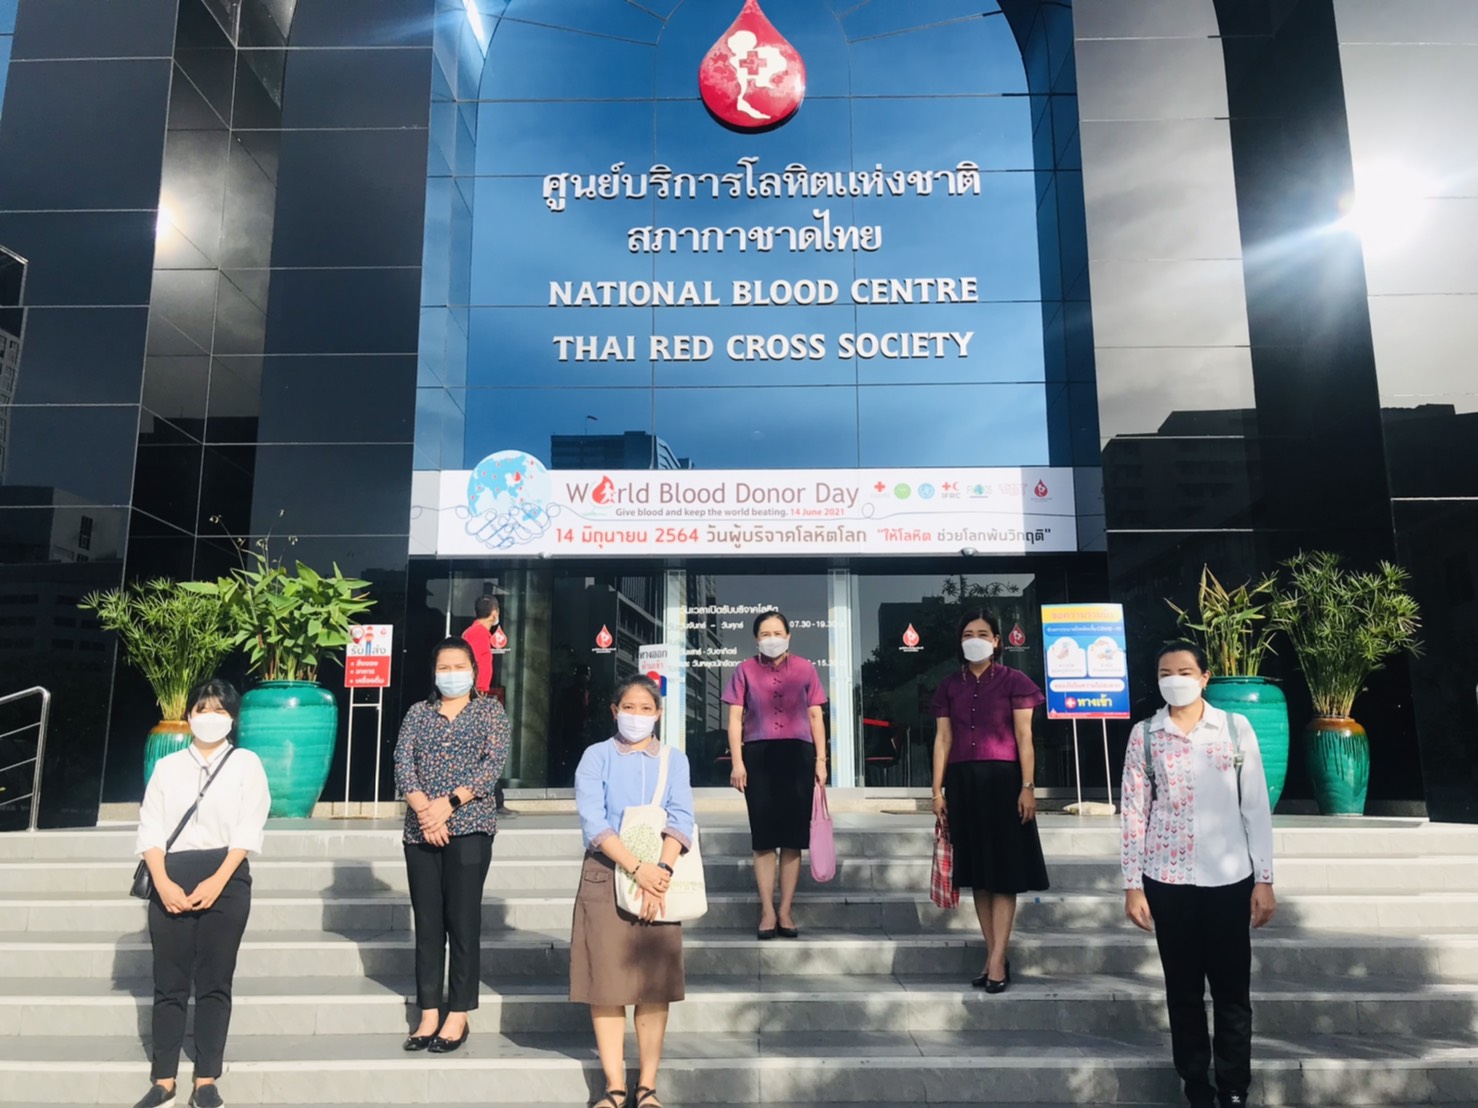 กิจกรรมร่วมบริจาคโลหิต เพื่อช่วยเหลือผู้ป่วยที่ต้องรับโลหิตในการรักษา ในสถานการณ์การแพร่ระบาด COVID-19  ณ ศูนย์บริการโลหิตแห่งชาติ สภากาชาดไทย